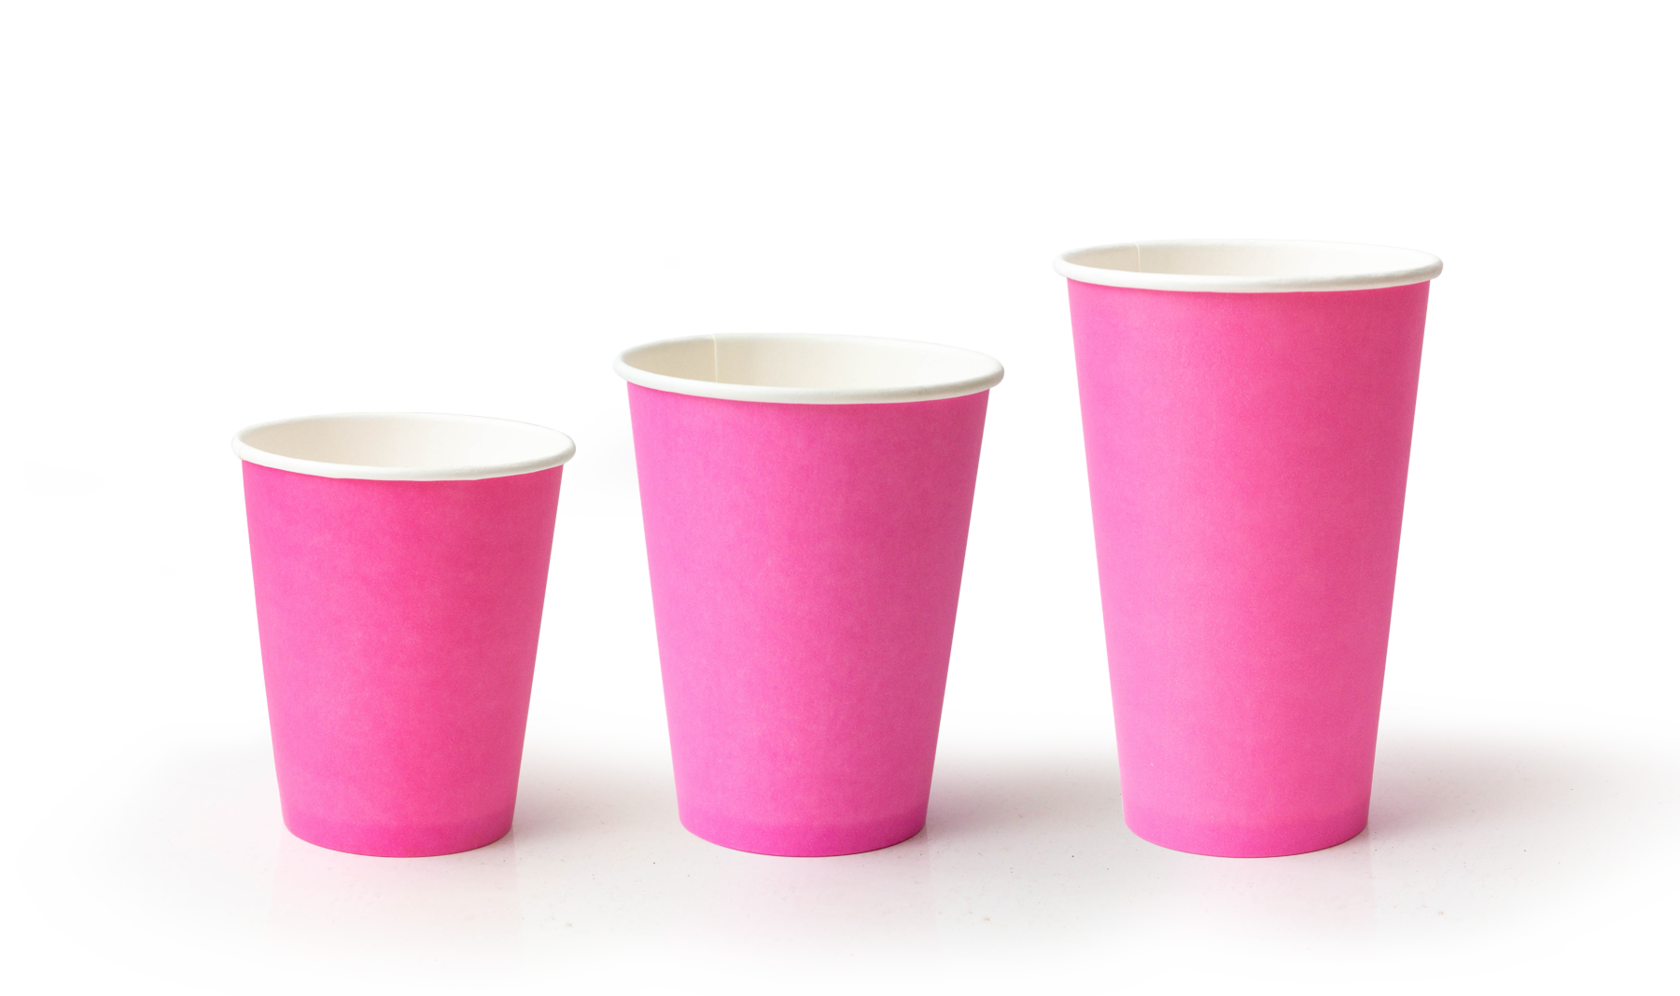 Бумажные стаканчики. Бумажный стаканчик. Картонный стаканчик. Розовый стаканчик для кофе. Кофе в розовом стакане.